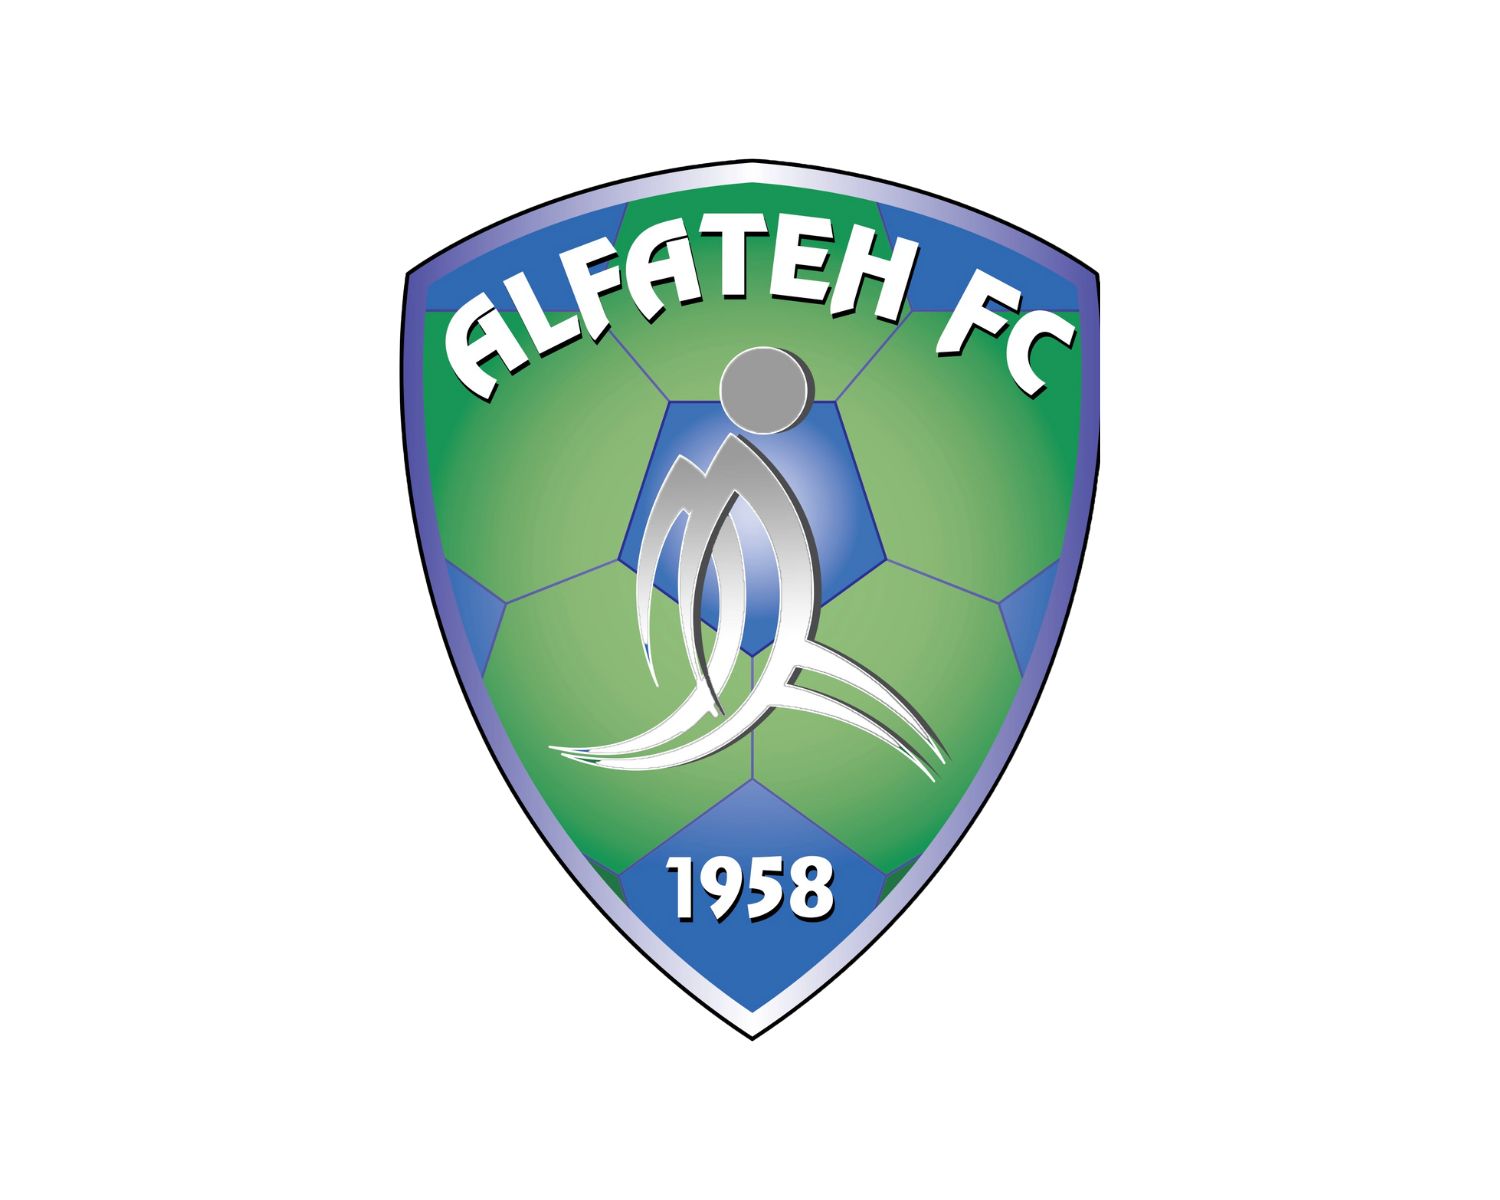 al-fateh-fc-11-football-club-facts